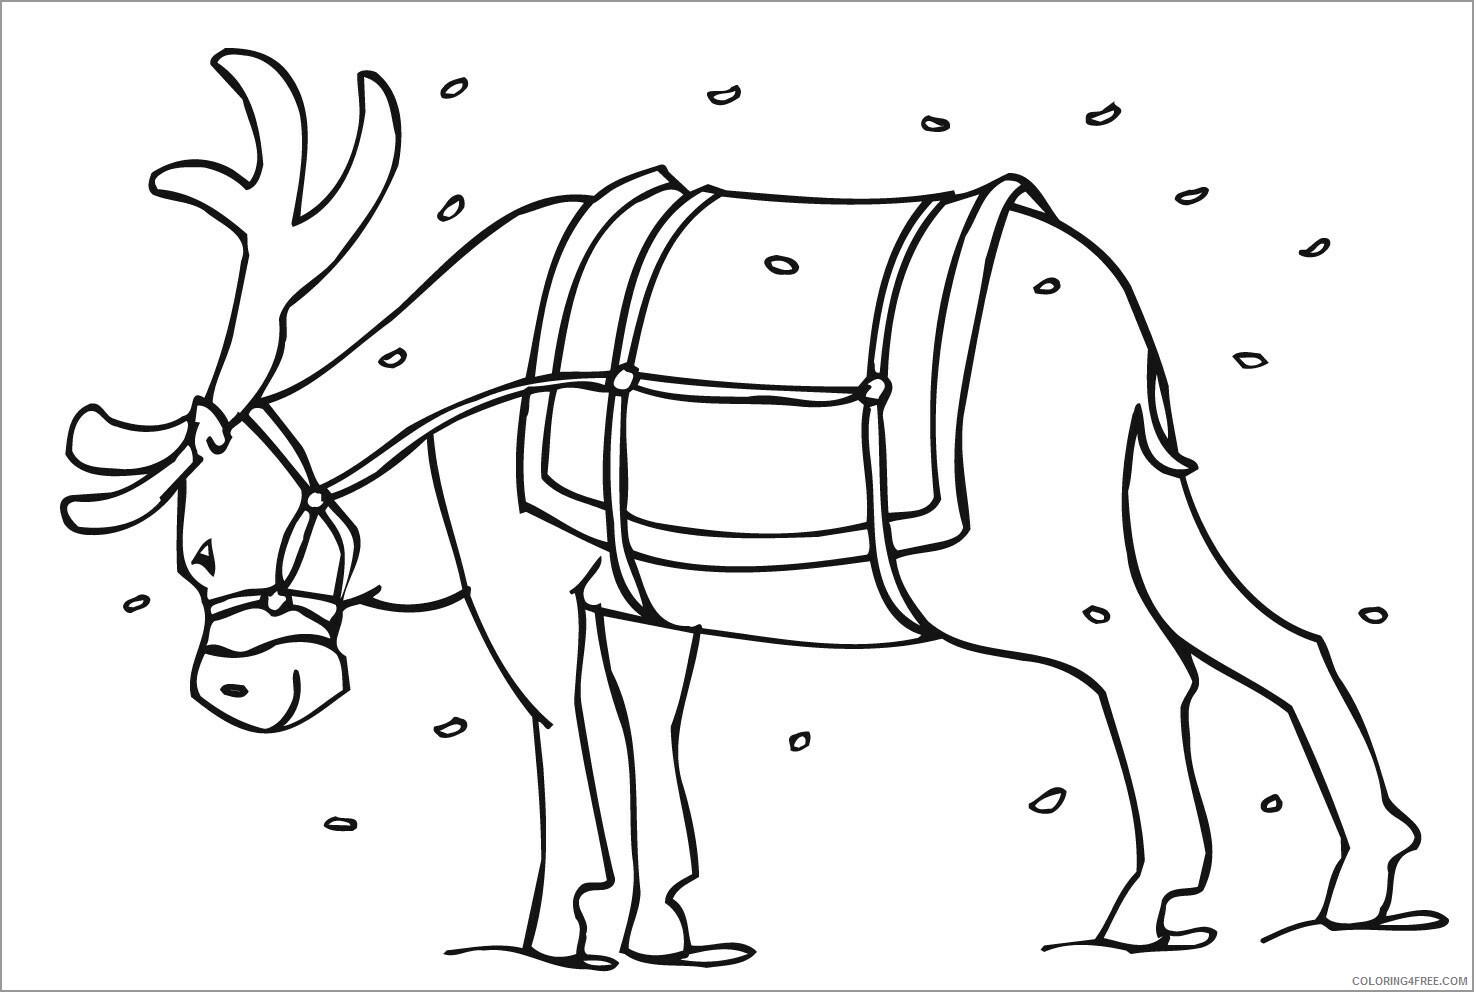 Preschool Animal Coloring Pages reindeer for preschoolers Printable 2021 4873 Coloring4free